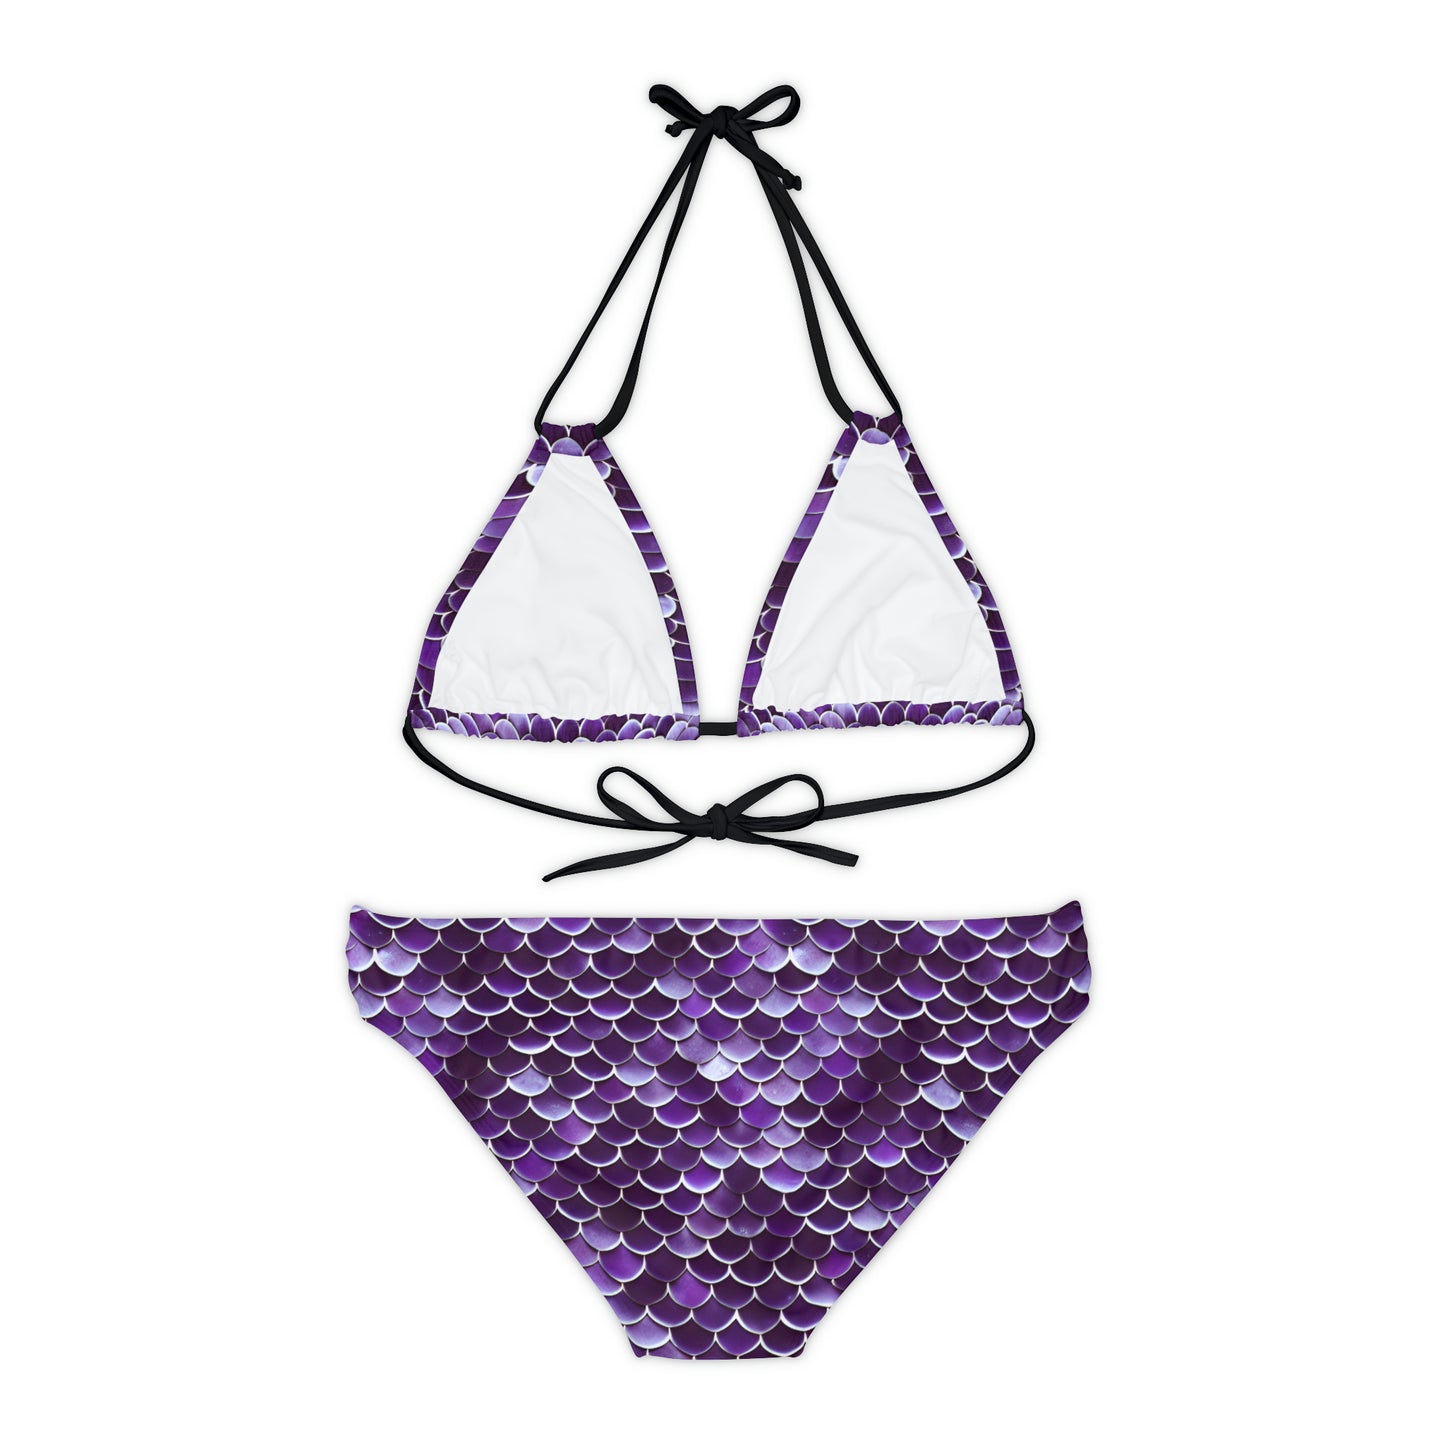 Purple Mermaid Scales Strappy Bikini Set Ocean-Inspired Swimsuit Style, Swimwear Inspired by the Little Mermaid Ariel, Woman Girl